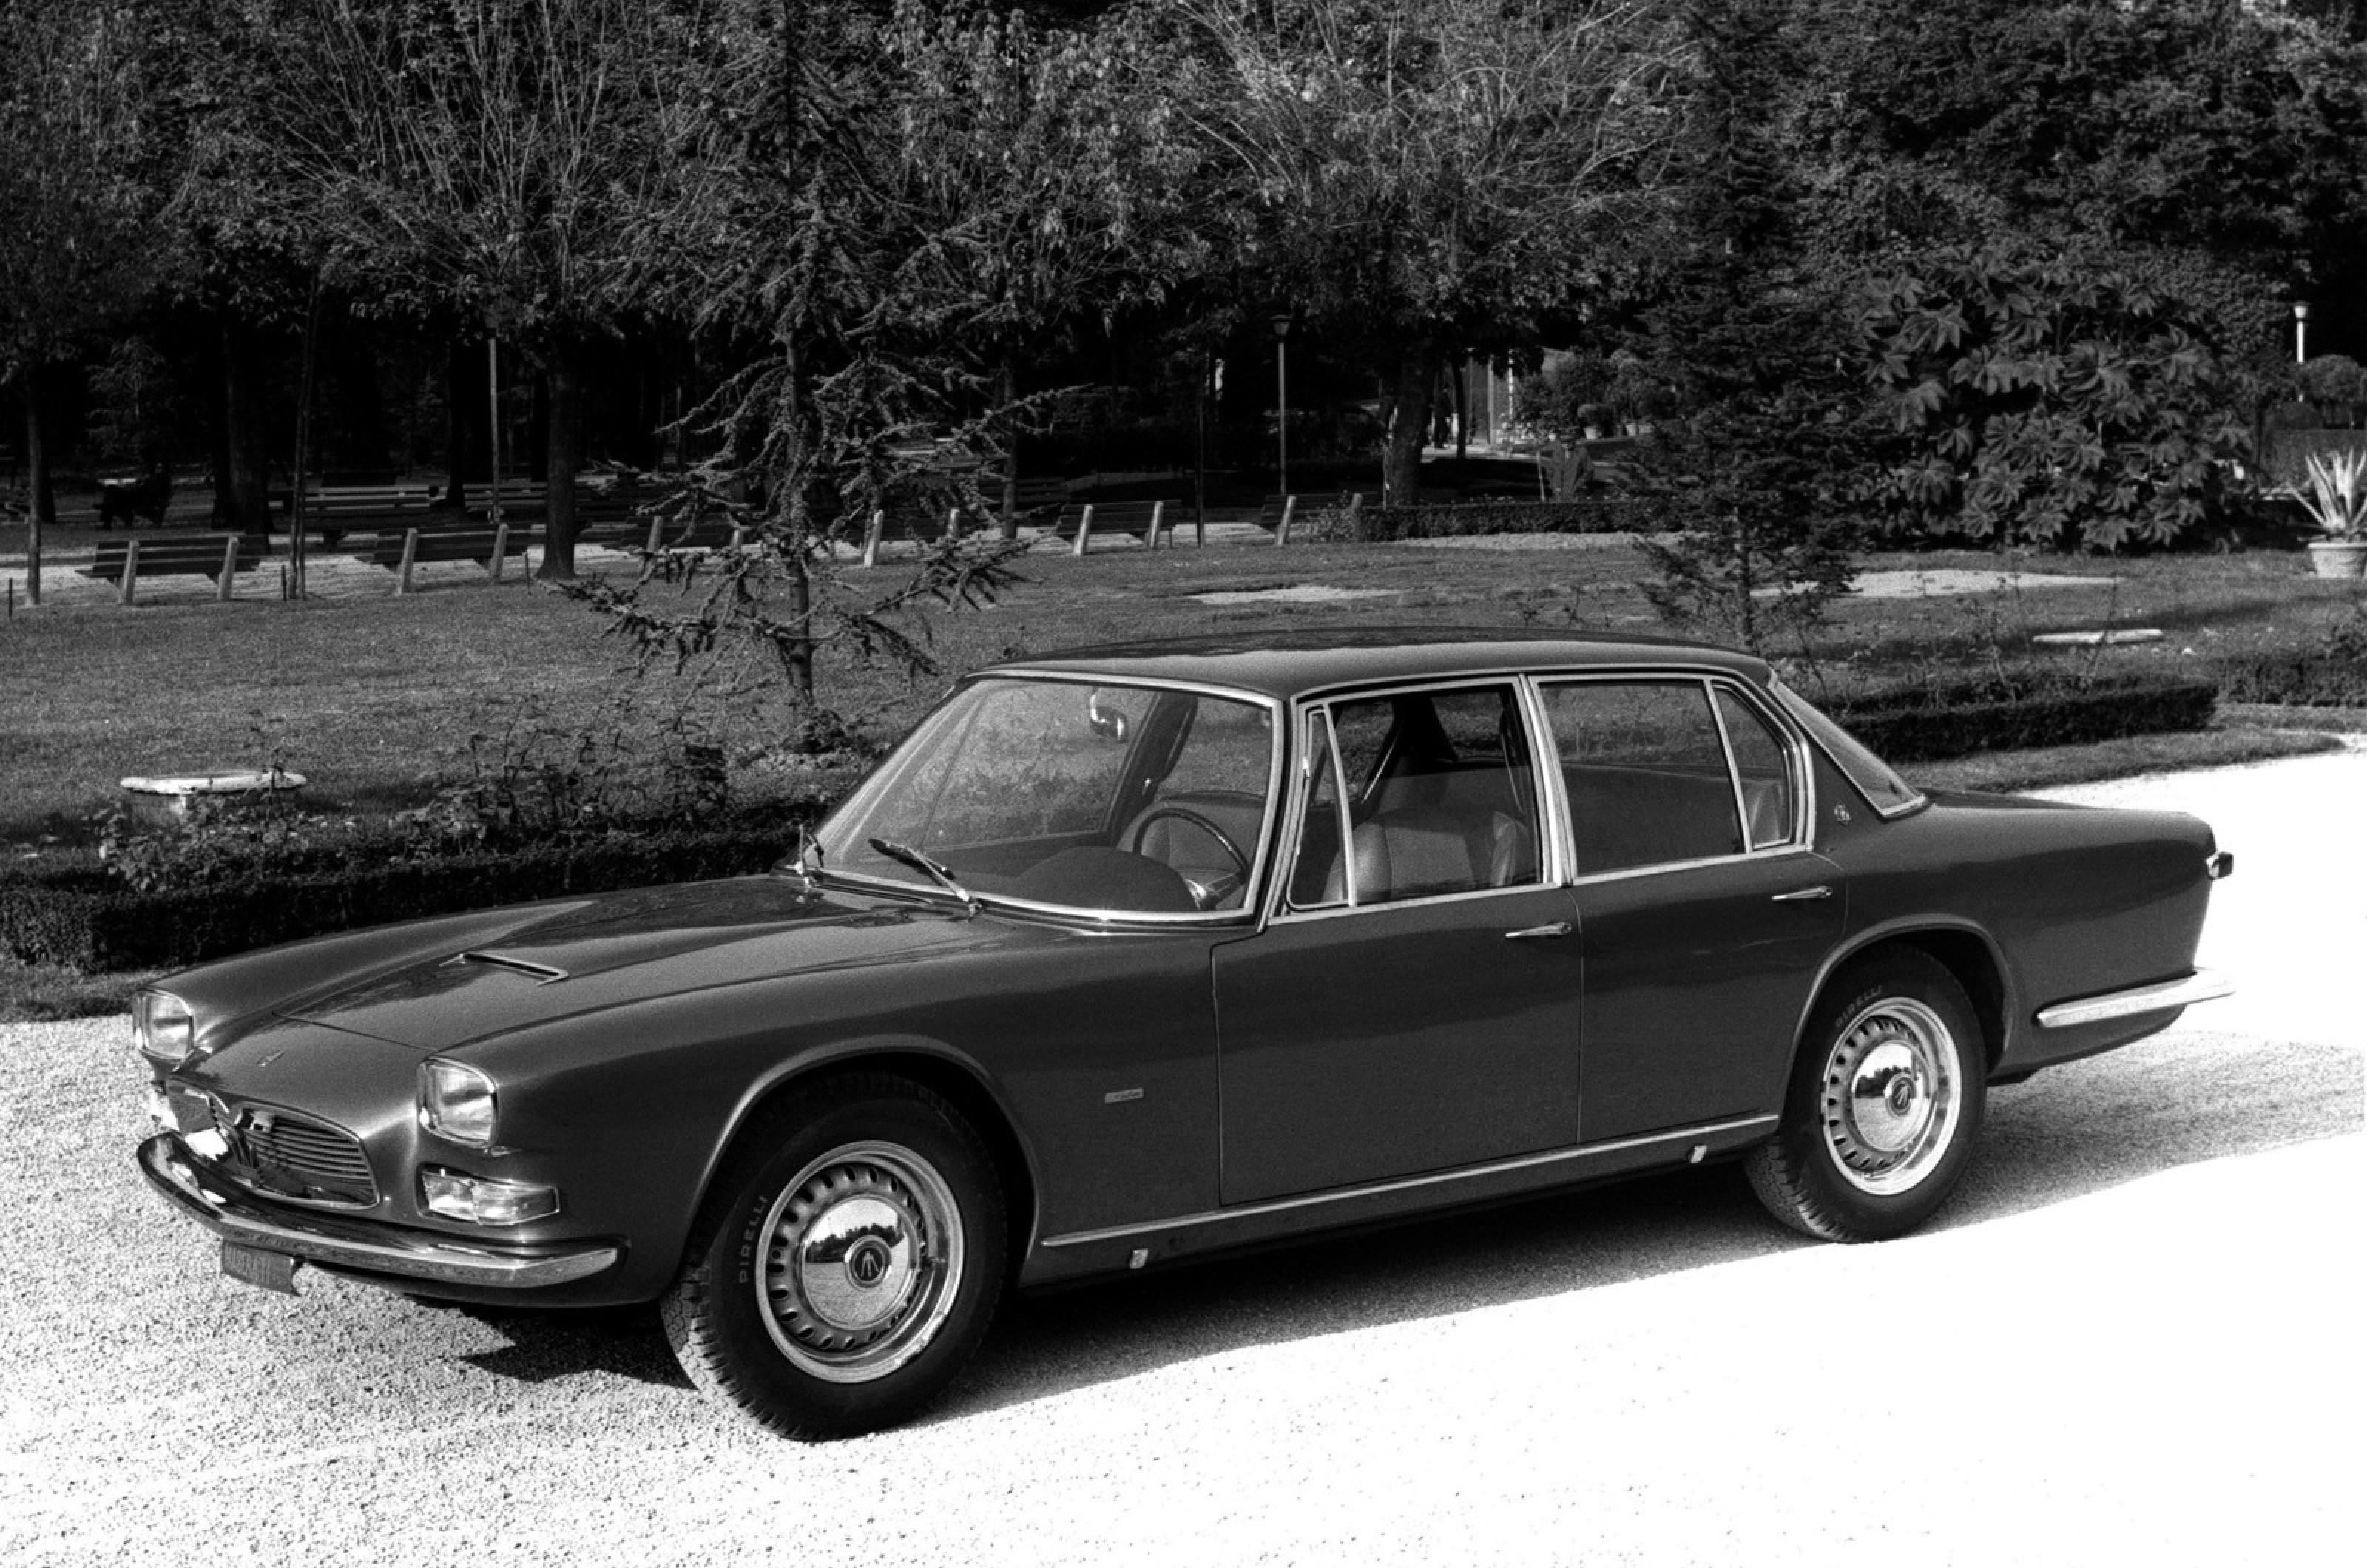 <p>La Quattroporte de Maserati avait la particularité d'être la seule berline de luxe italienne à quatre portes sur le marché lors de son lancement. C'était également la première voiture de la firme à utiliser son nouveau moteur V8 de 4,1 litres, porté plus tard à 4,7 litres, qui a permis à la Quattroporte d'être à la hauteur de la réputation sportive de l'entreprise.</p>  <p>À l'intérieur, la Quattroporte était équipée de cuir souple, de boiseries et de tous les éléments de luxe contemporains tels que la climatisation, les vitres électriques, la radio et la boîte de vitesses automatique en option à la place de la boîte manuelle à cinq vitesses de série.</p>